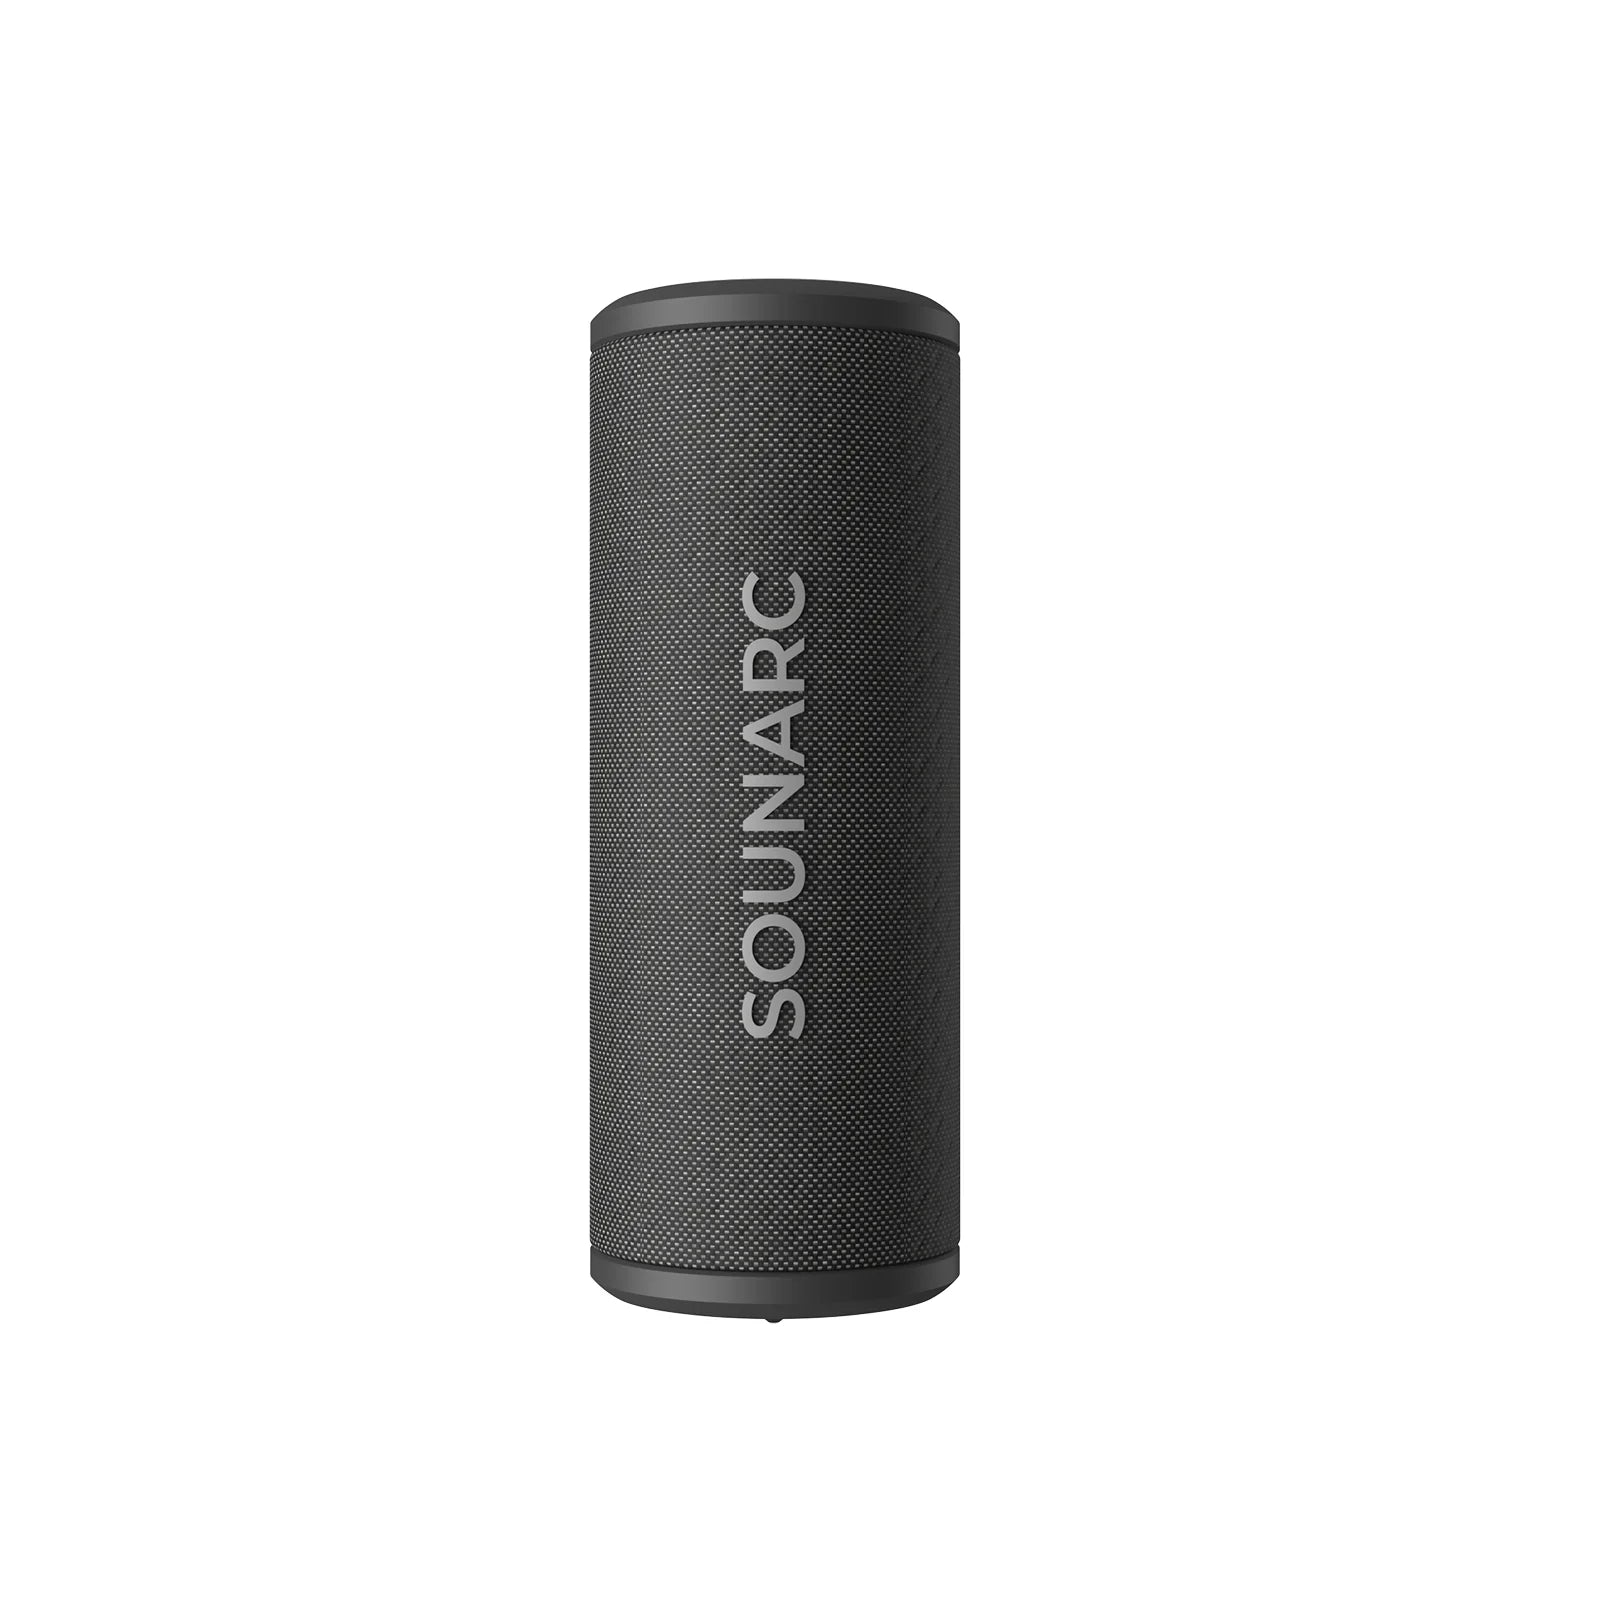 SOUNARC P4 Portable Speaker